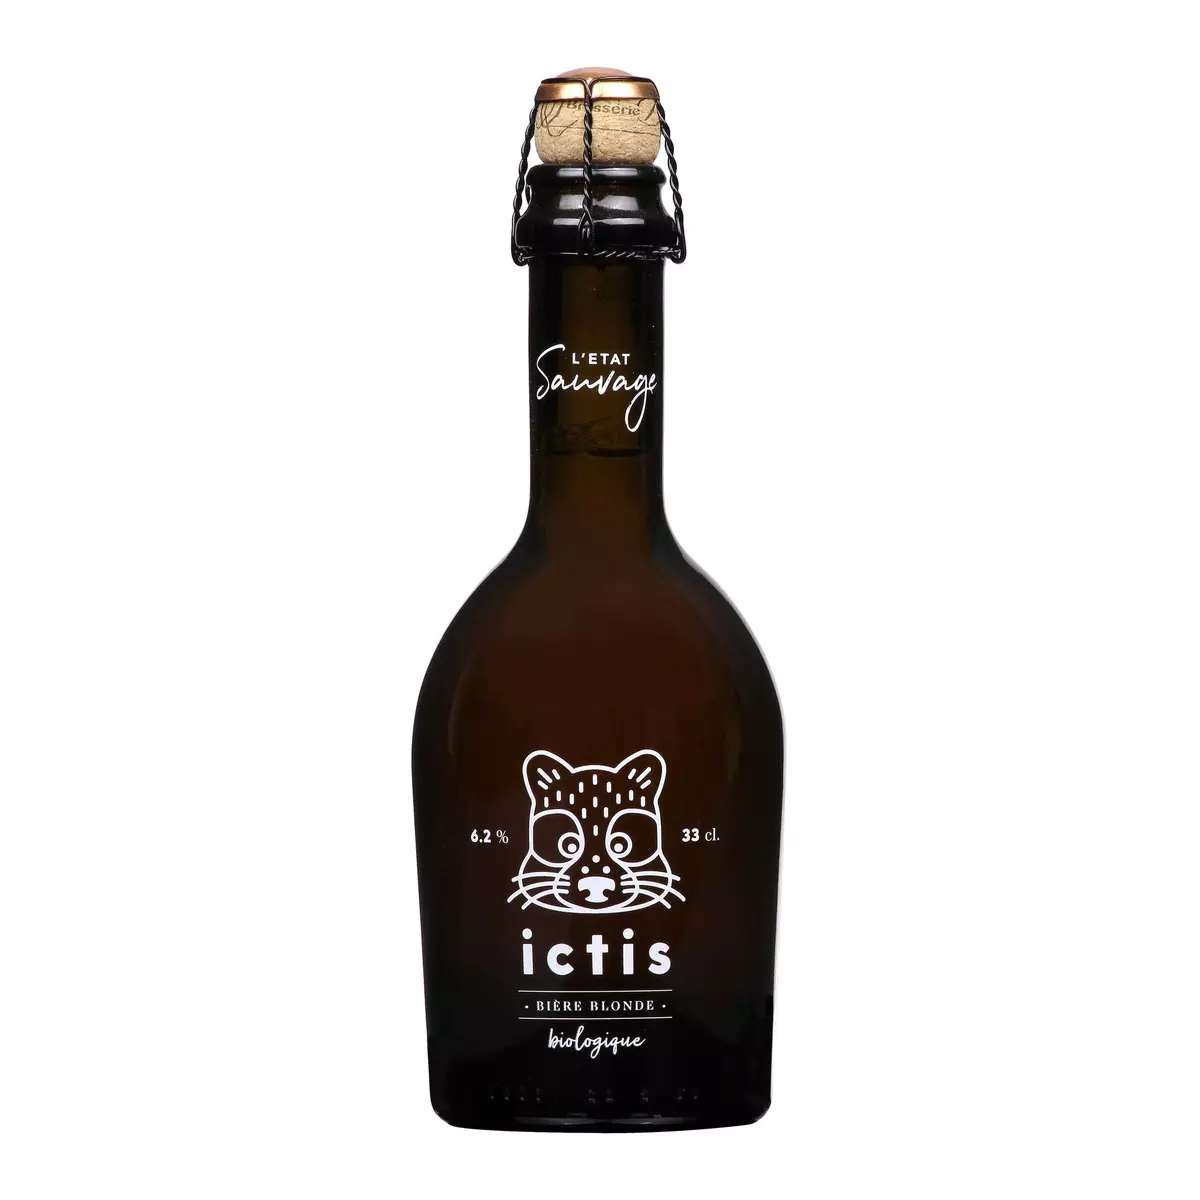 L'ETAT SAUVAGE Bière blonde bio ictis 6.2% bouteille 33cl